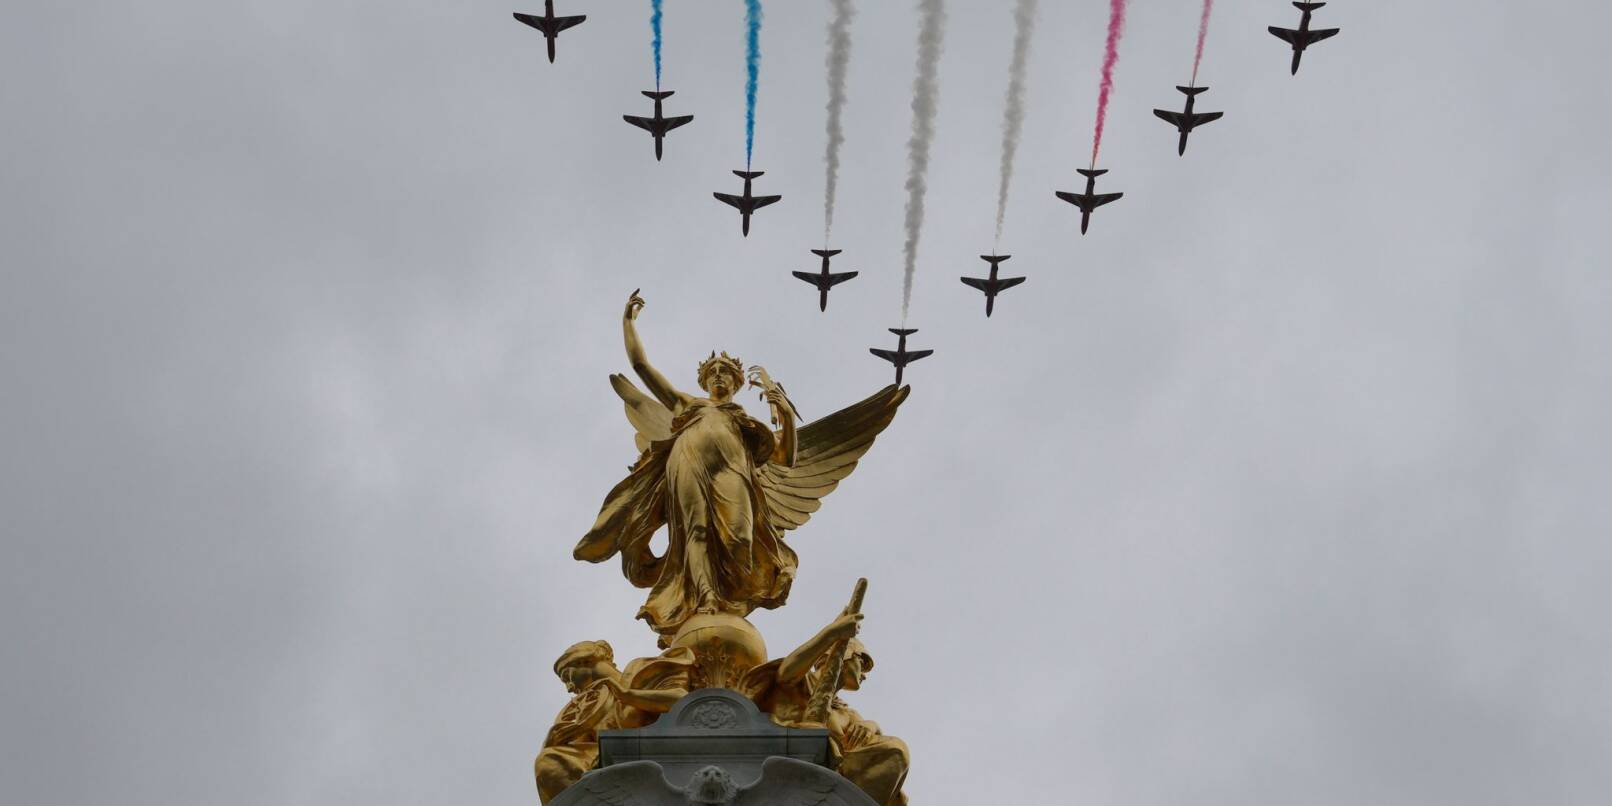 Die Farben des Union Jack am Himmel: Jets der Royal Air Force überfliegen das Victoria Memorial in der Nähe des Buckingham Palace.